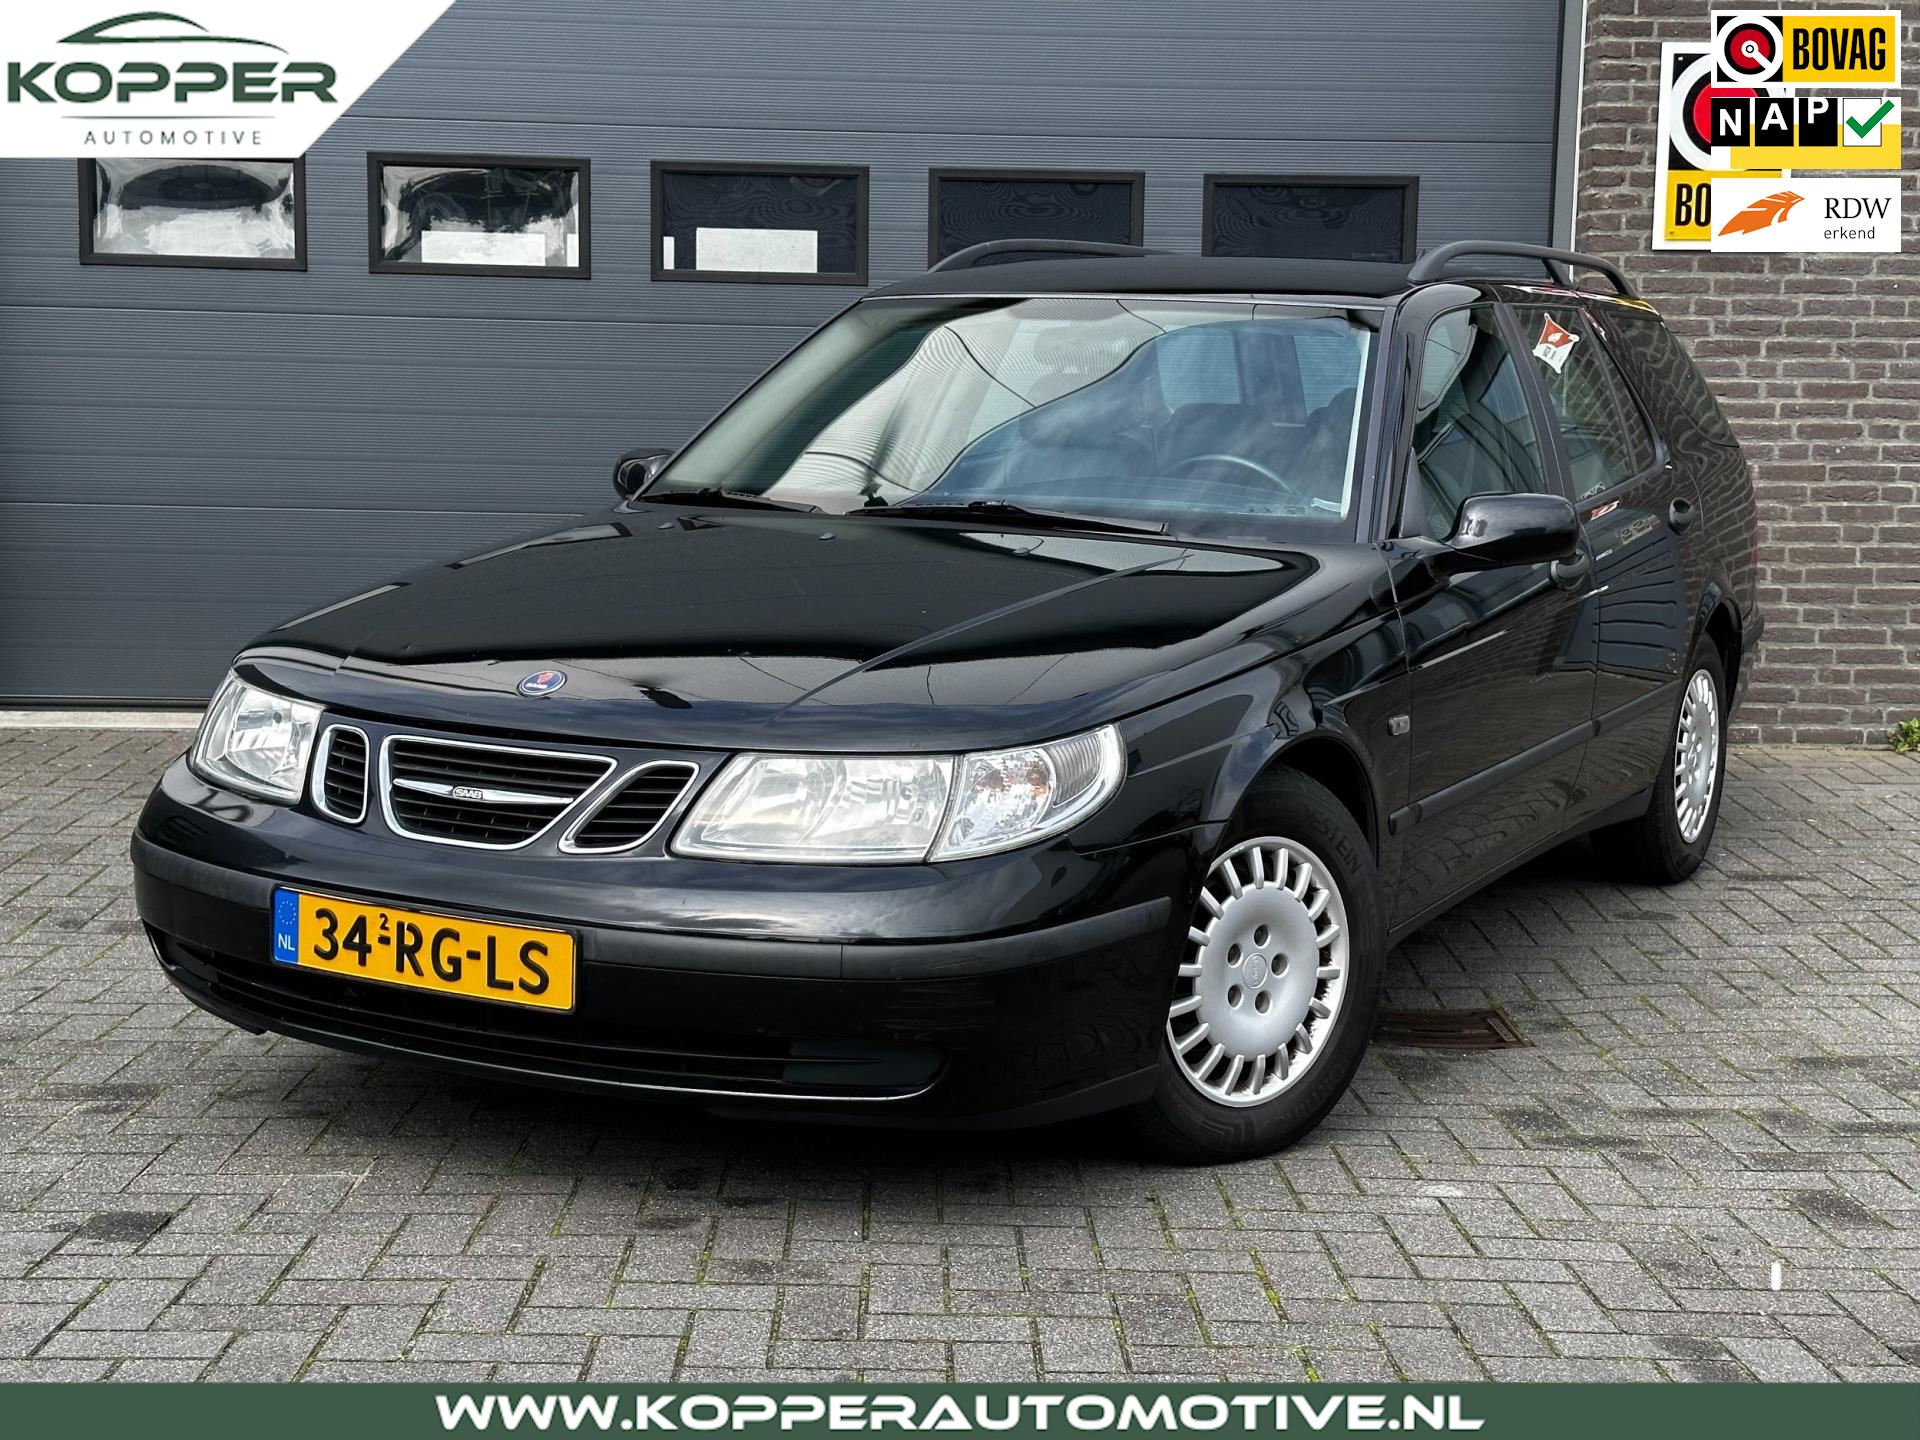 Saab 9-5 Estate occasion - Kopper Automotive B.V.